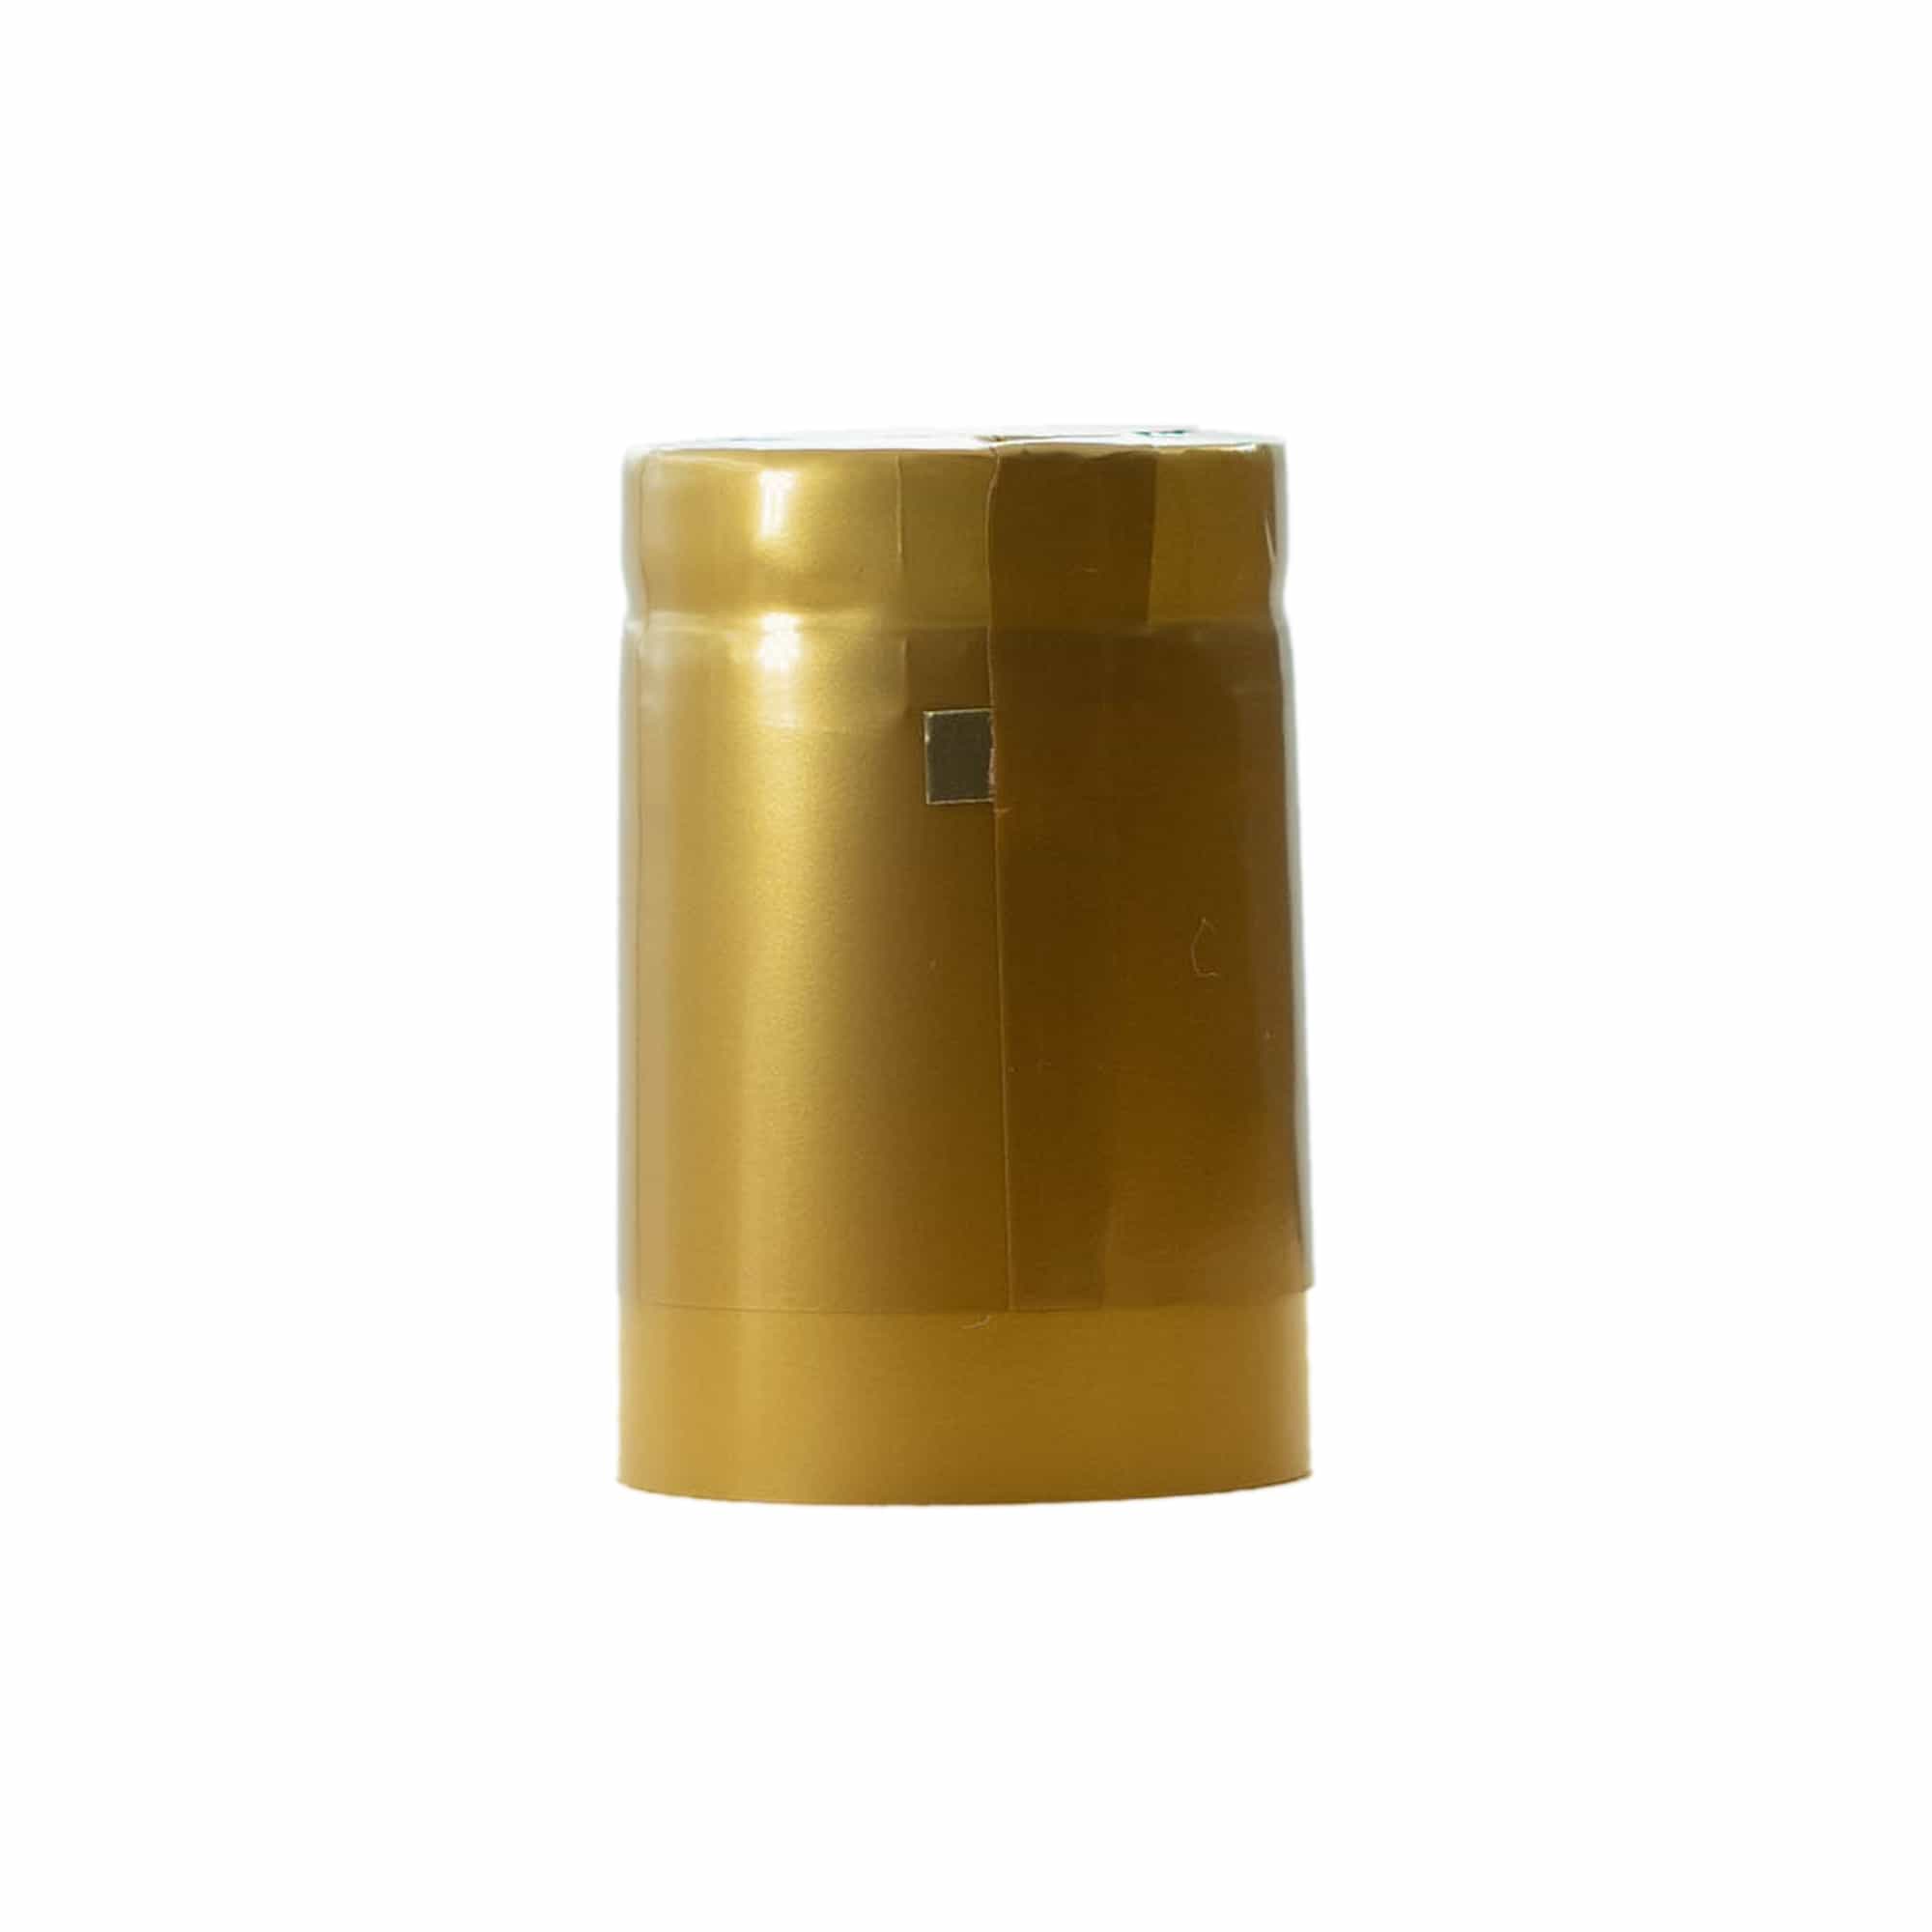 Capsule thermo-rétractable 32x41, plastique PVC, doré